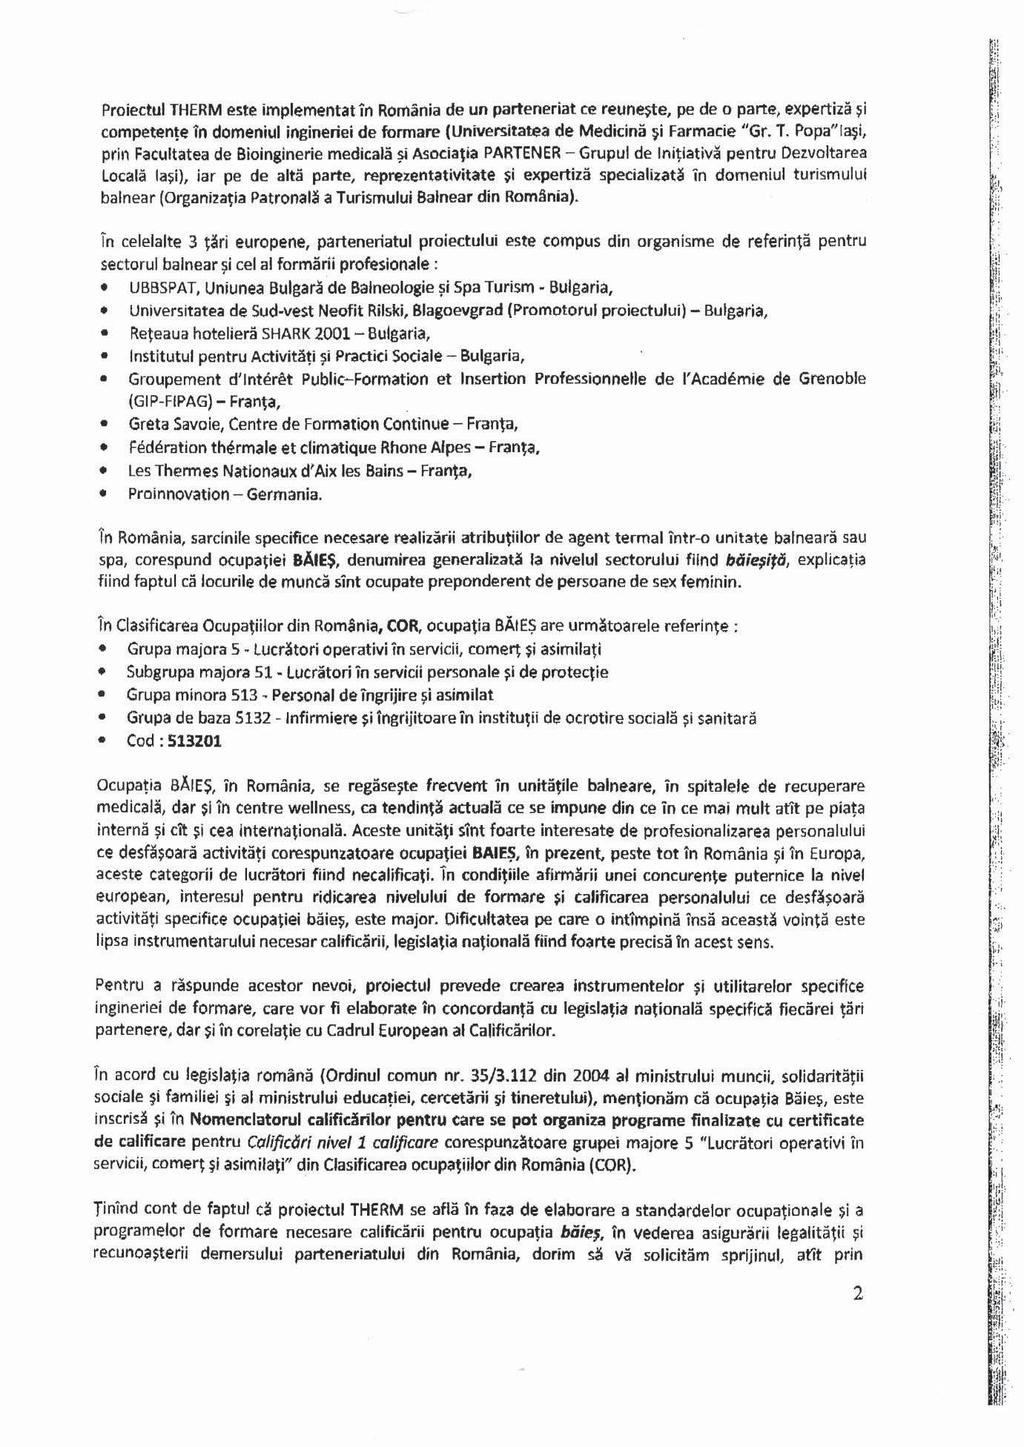 DOSAR DE INSCRIERE PENTRU CERTIFICAREA AGENTULUI DE INGRIJIRI TERMALE IN  CADRUL ROMAN DE CERTIFICARE - PDF Free Download